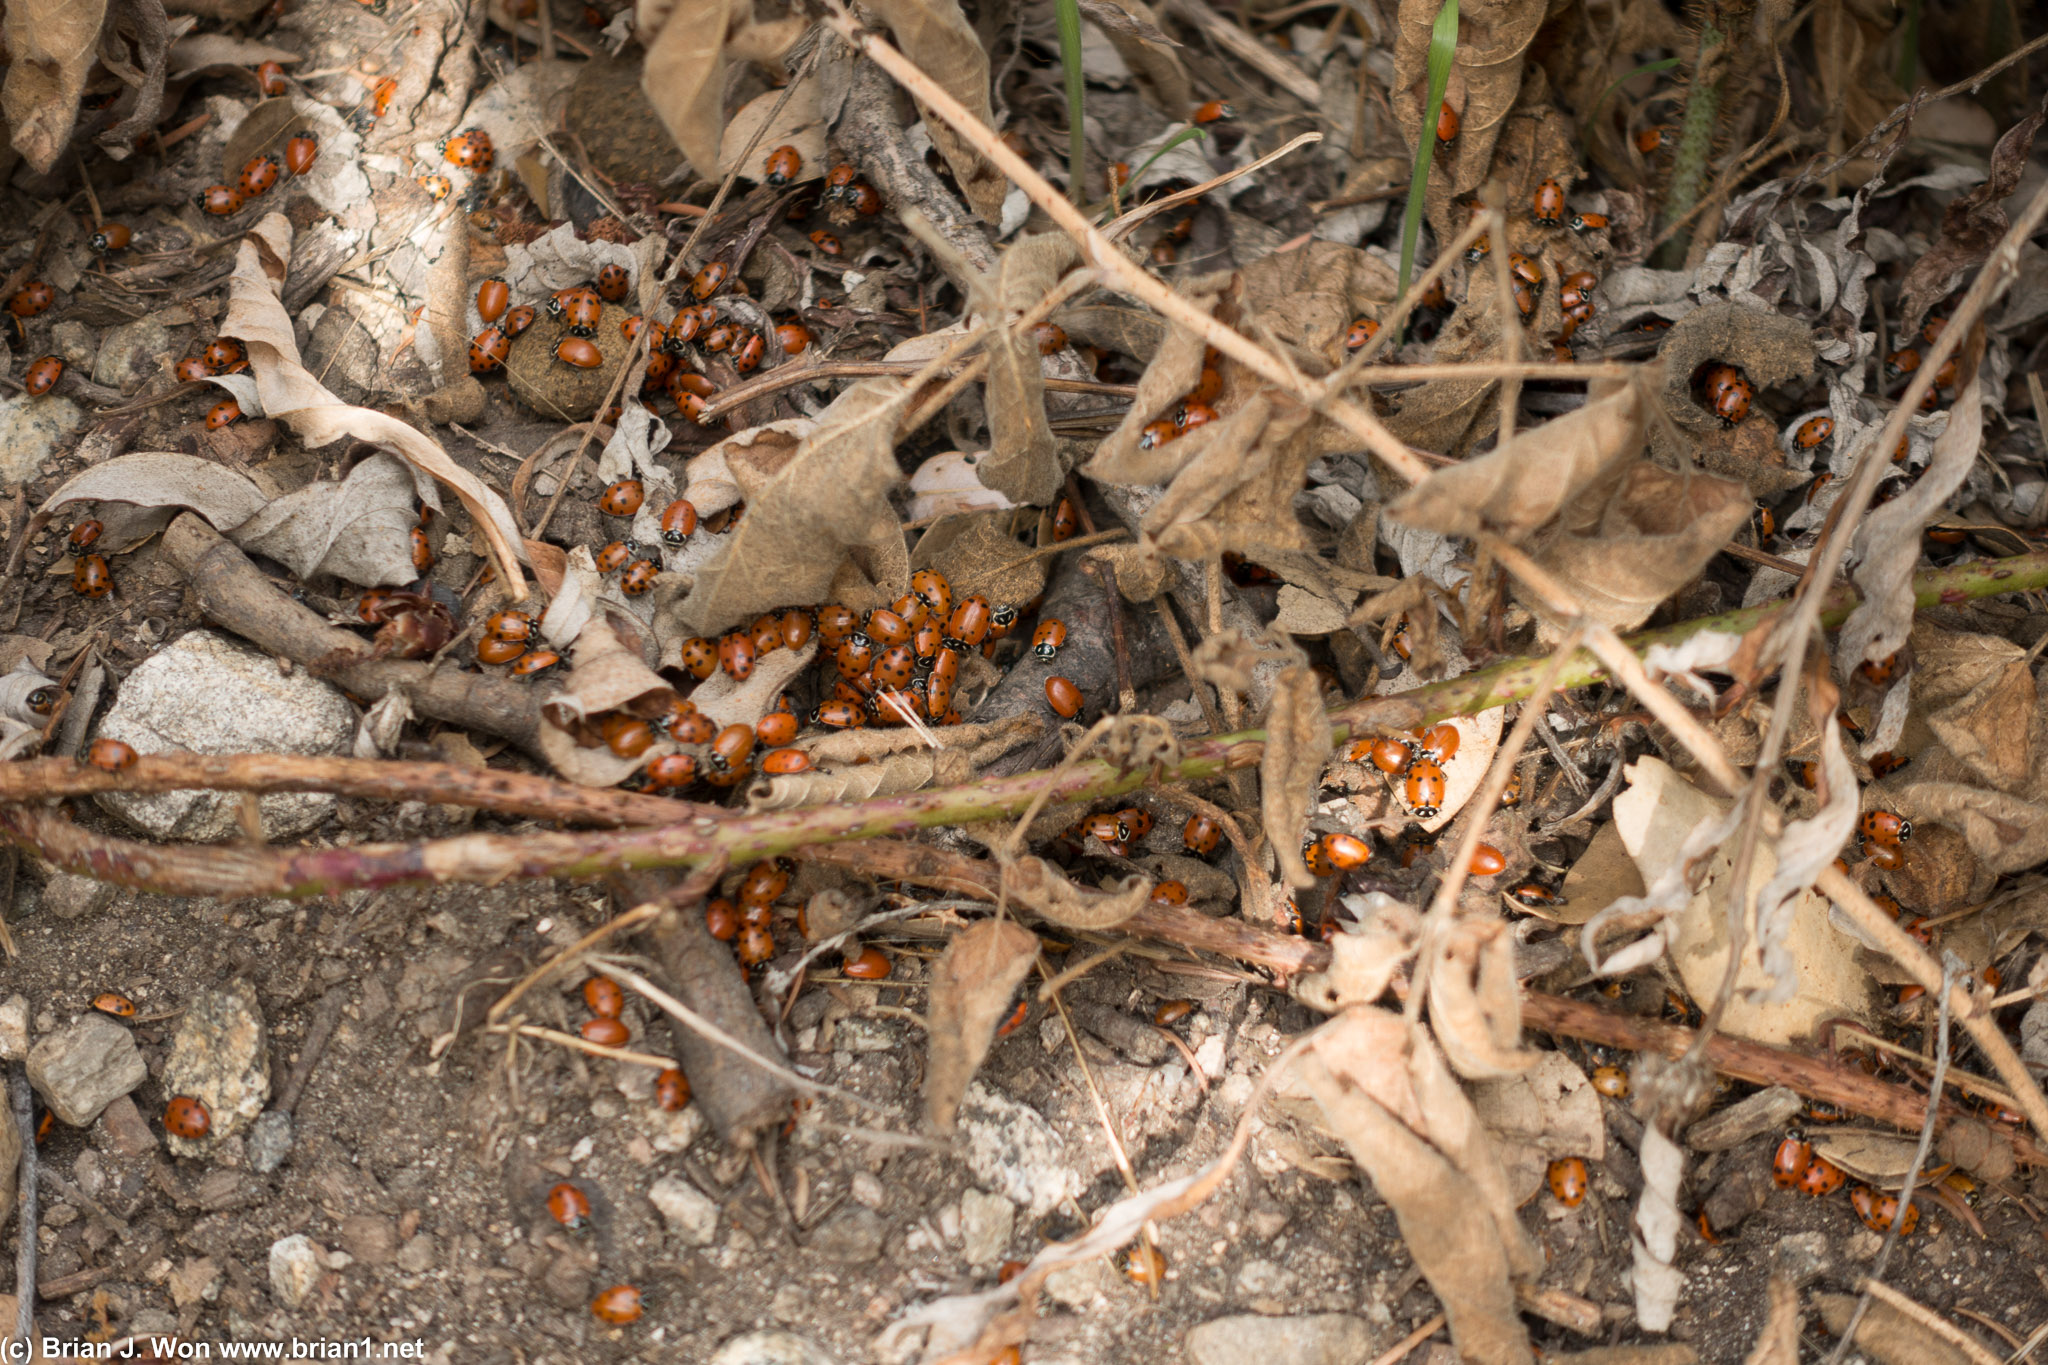 Tons of ladybugs.